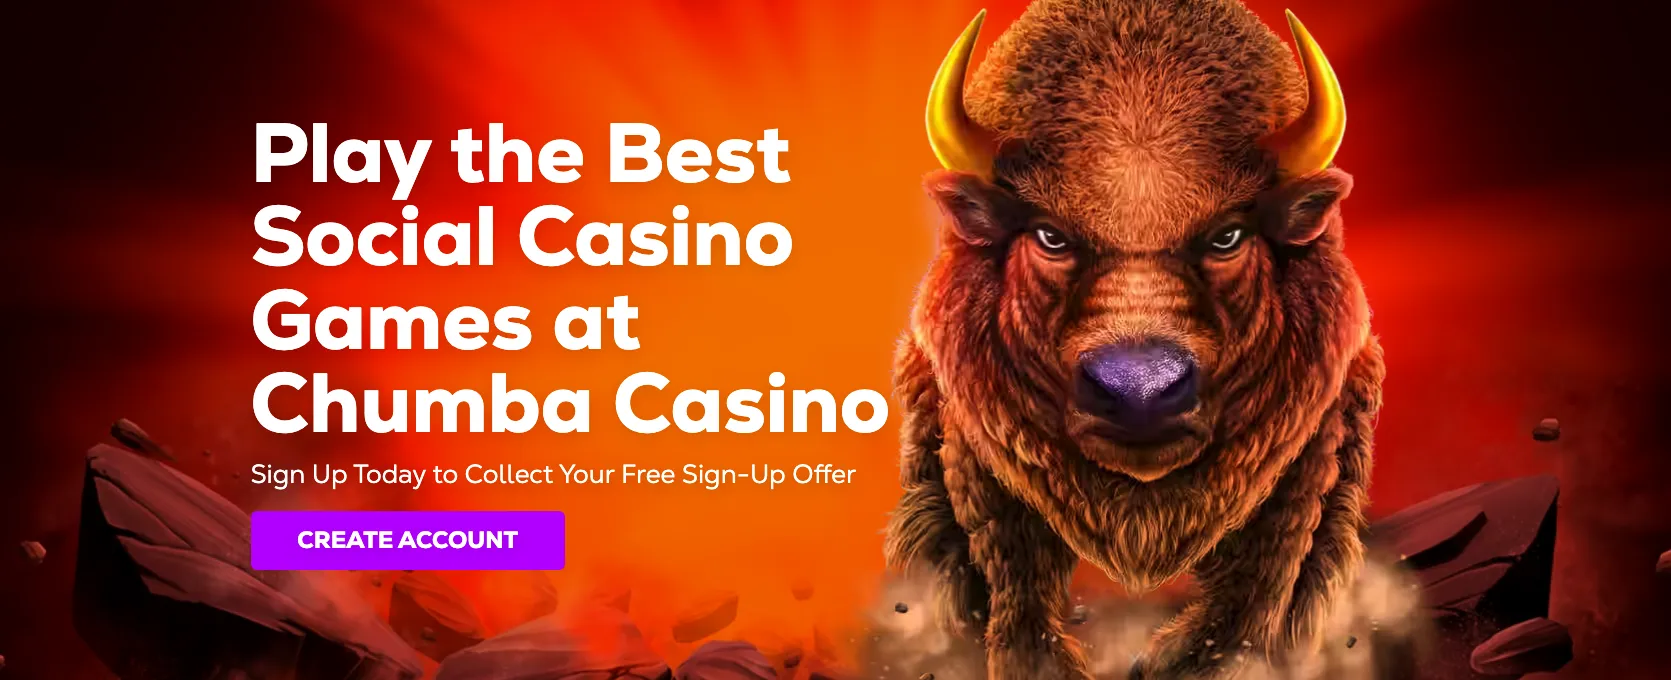 Chumba casino Image